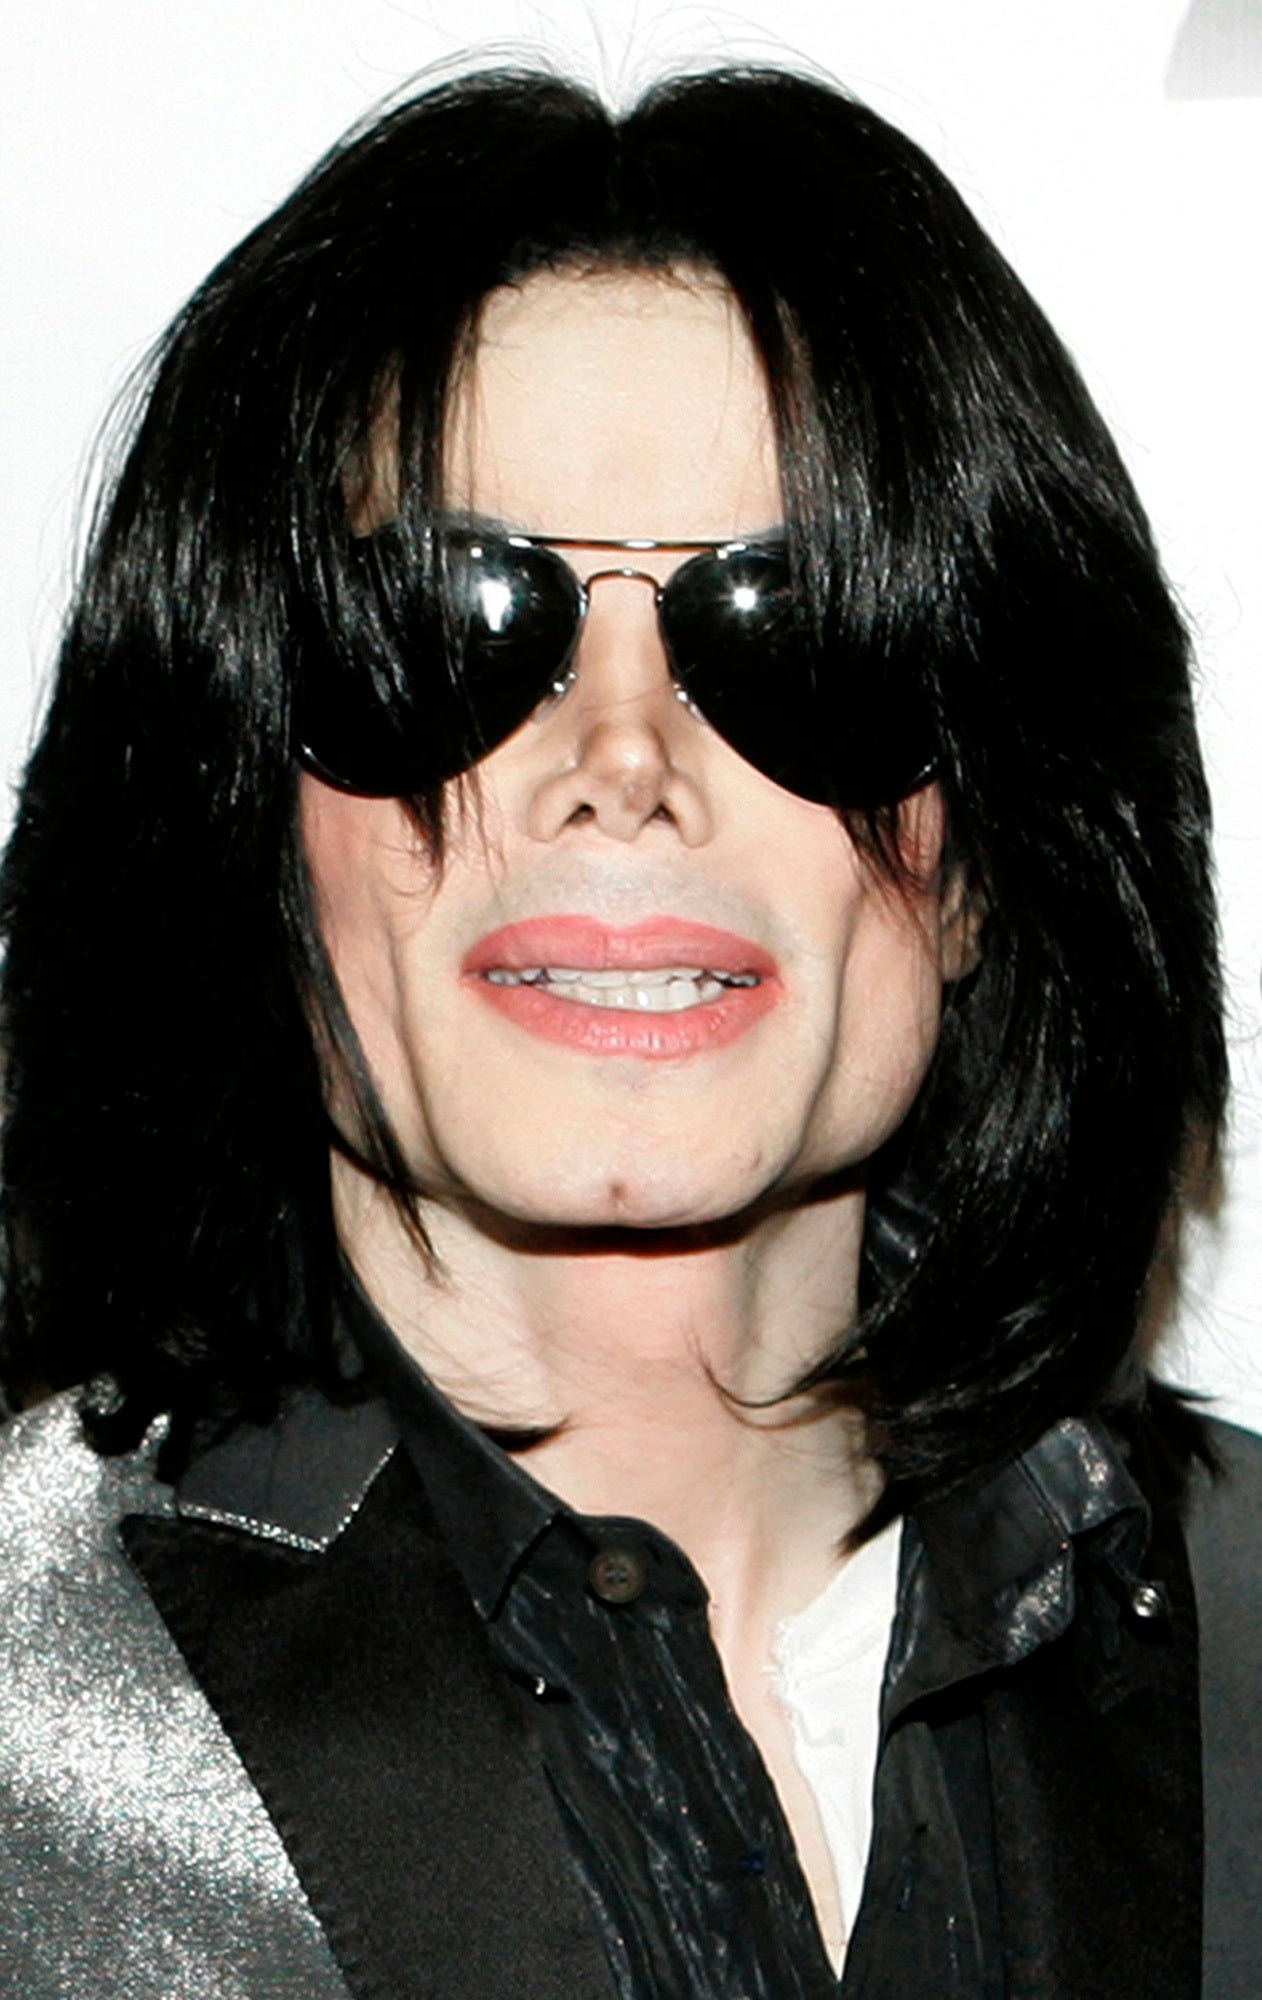 More Slurred Michael Jackson Audio Released